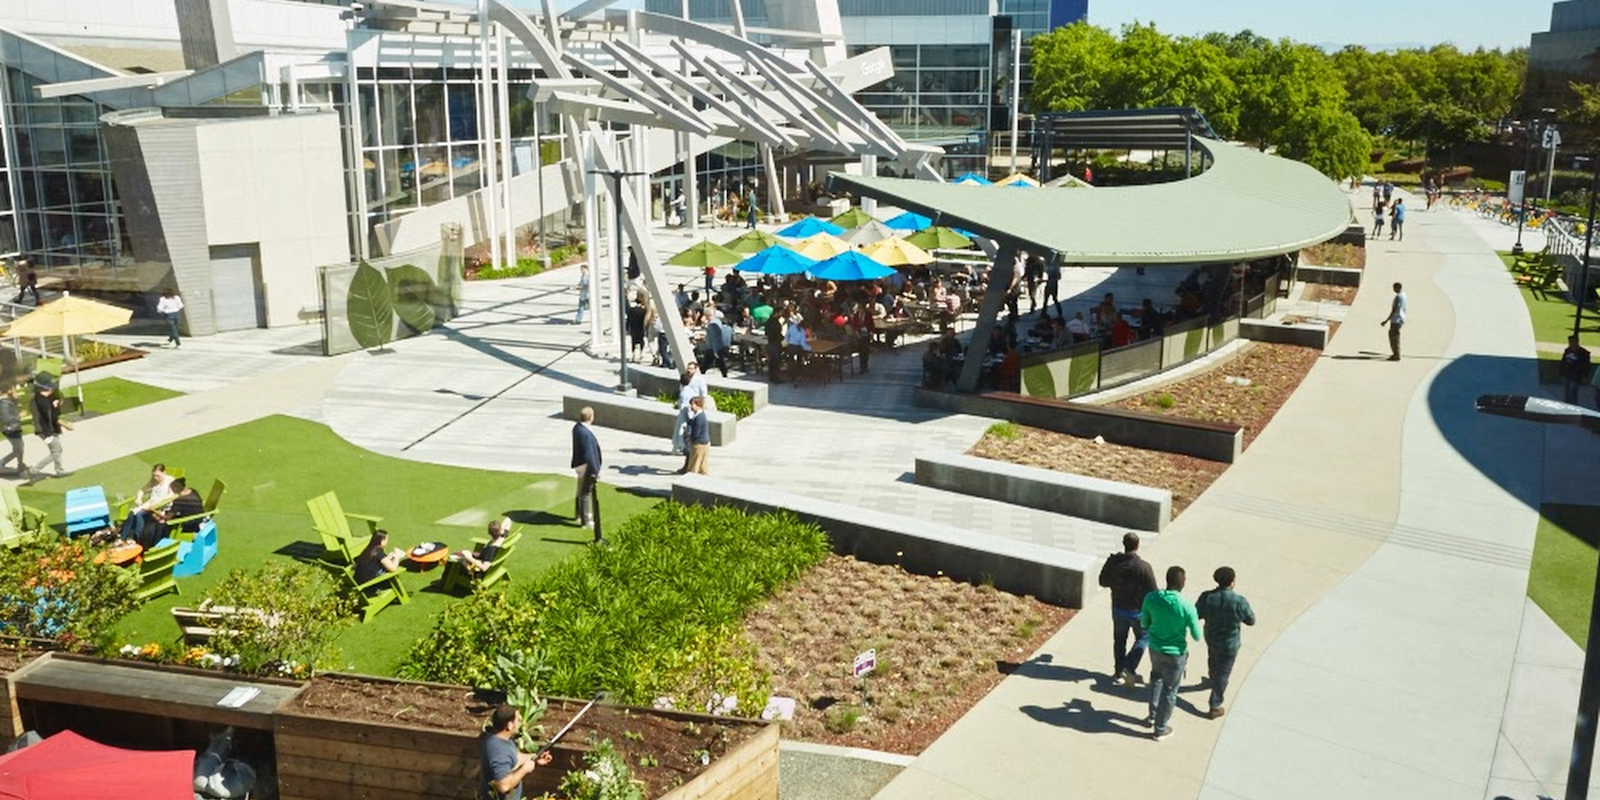 Google Campus, Googleplex 3, outdoor hangout area with people walking